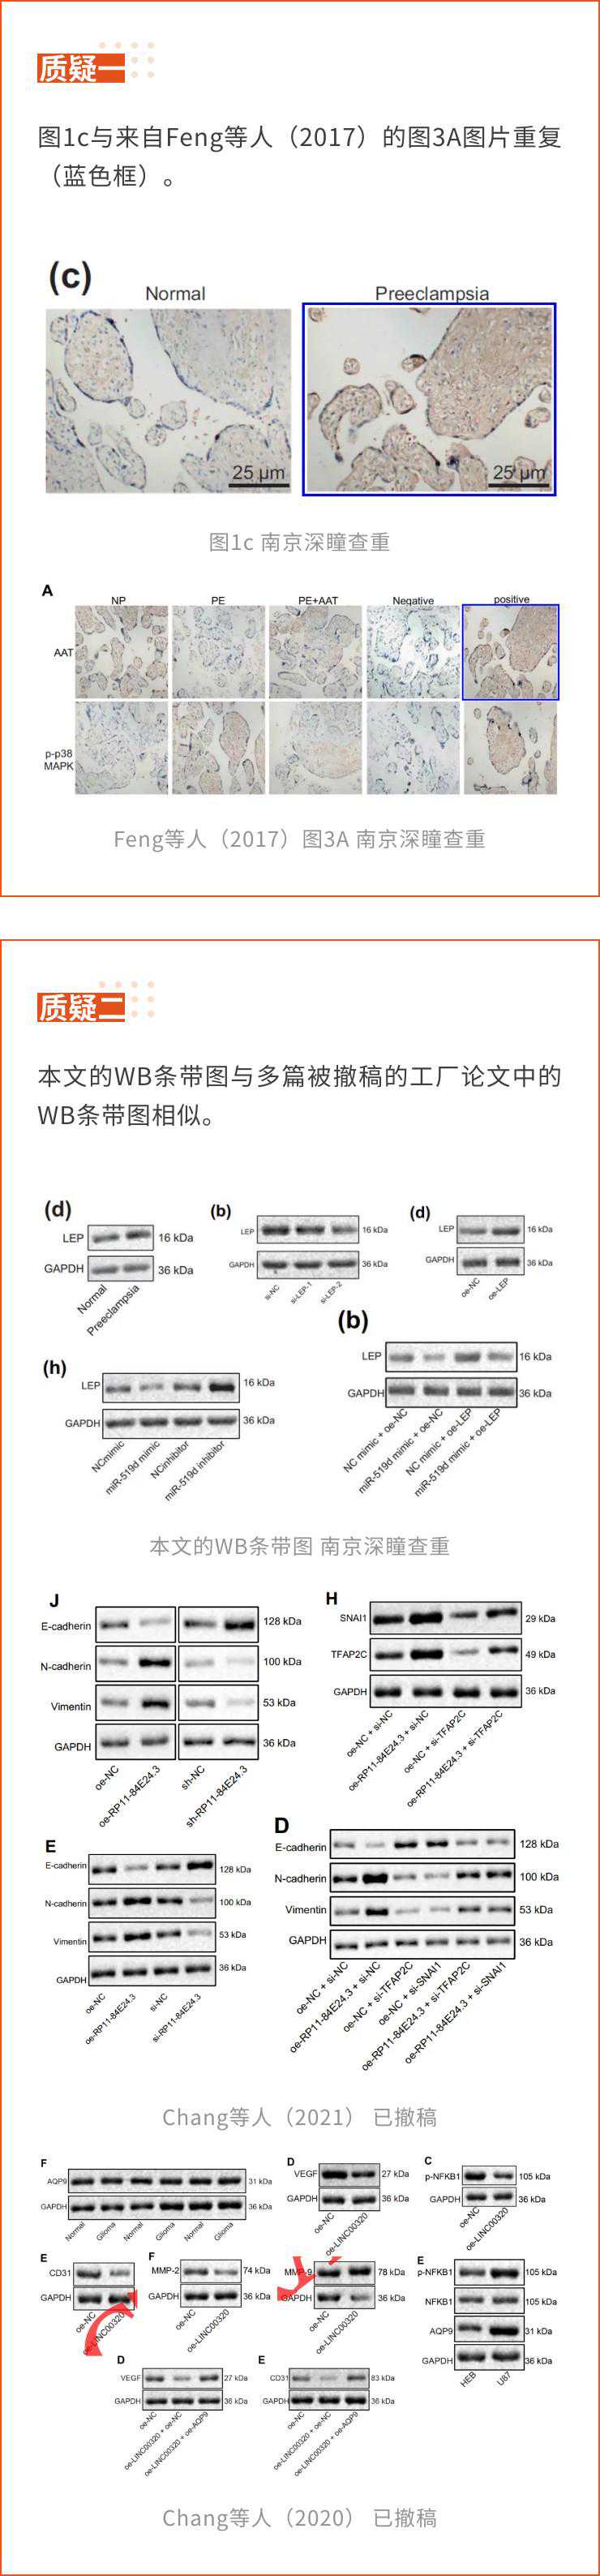 宁波市妇女儿童医院的sci论文因免疫组化图片重复被质疑